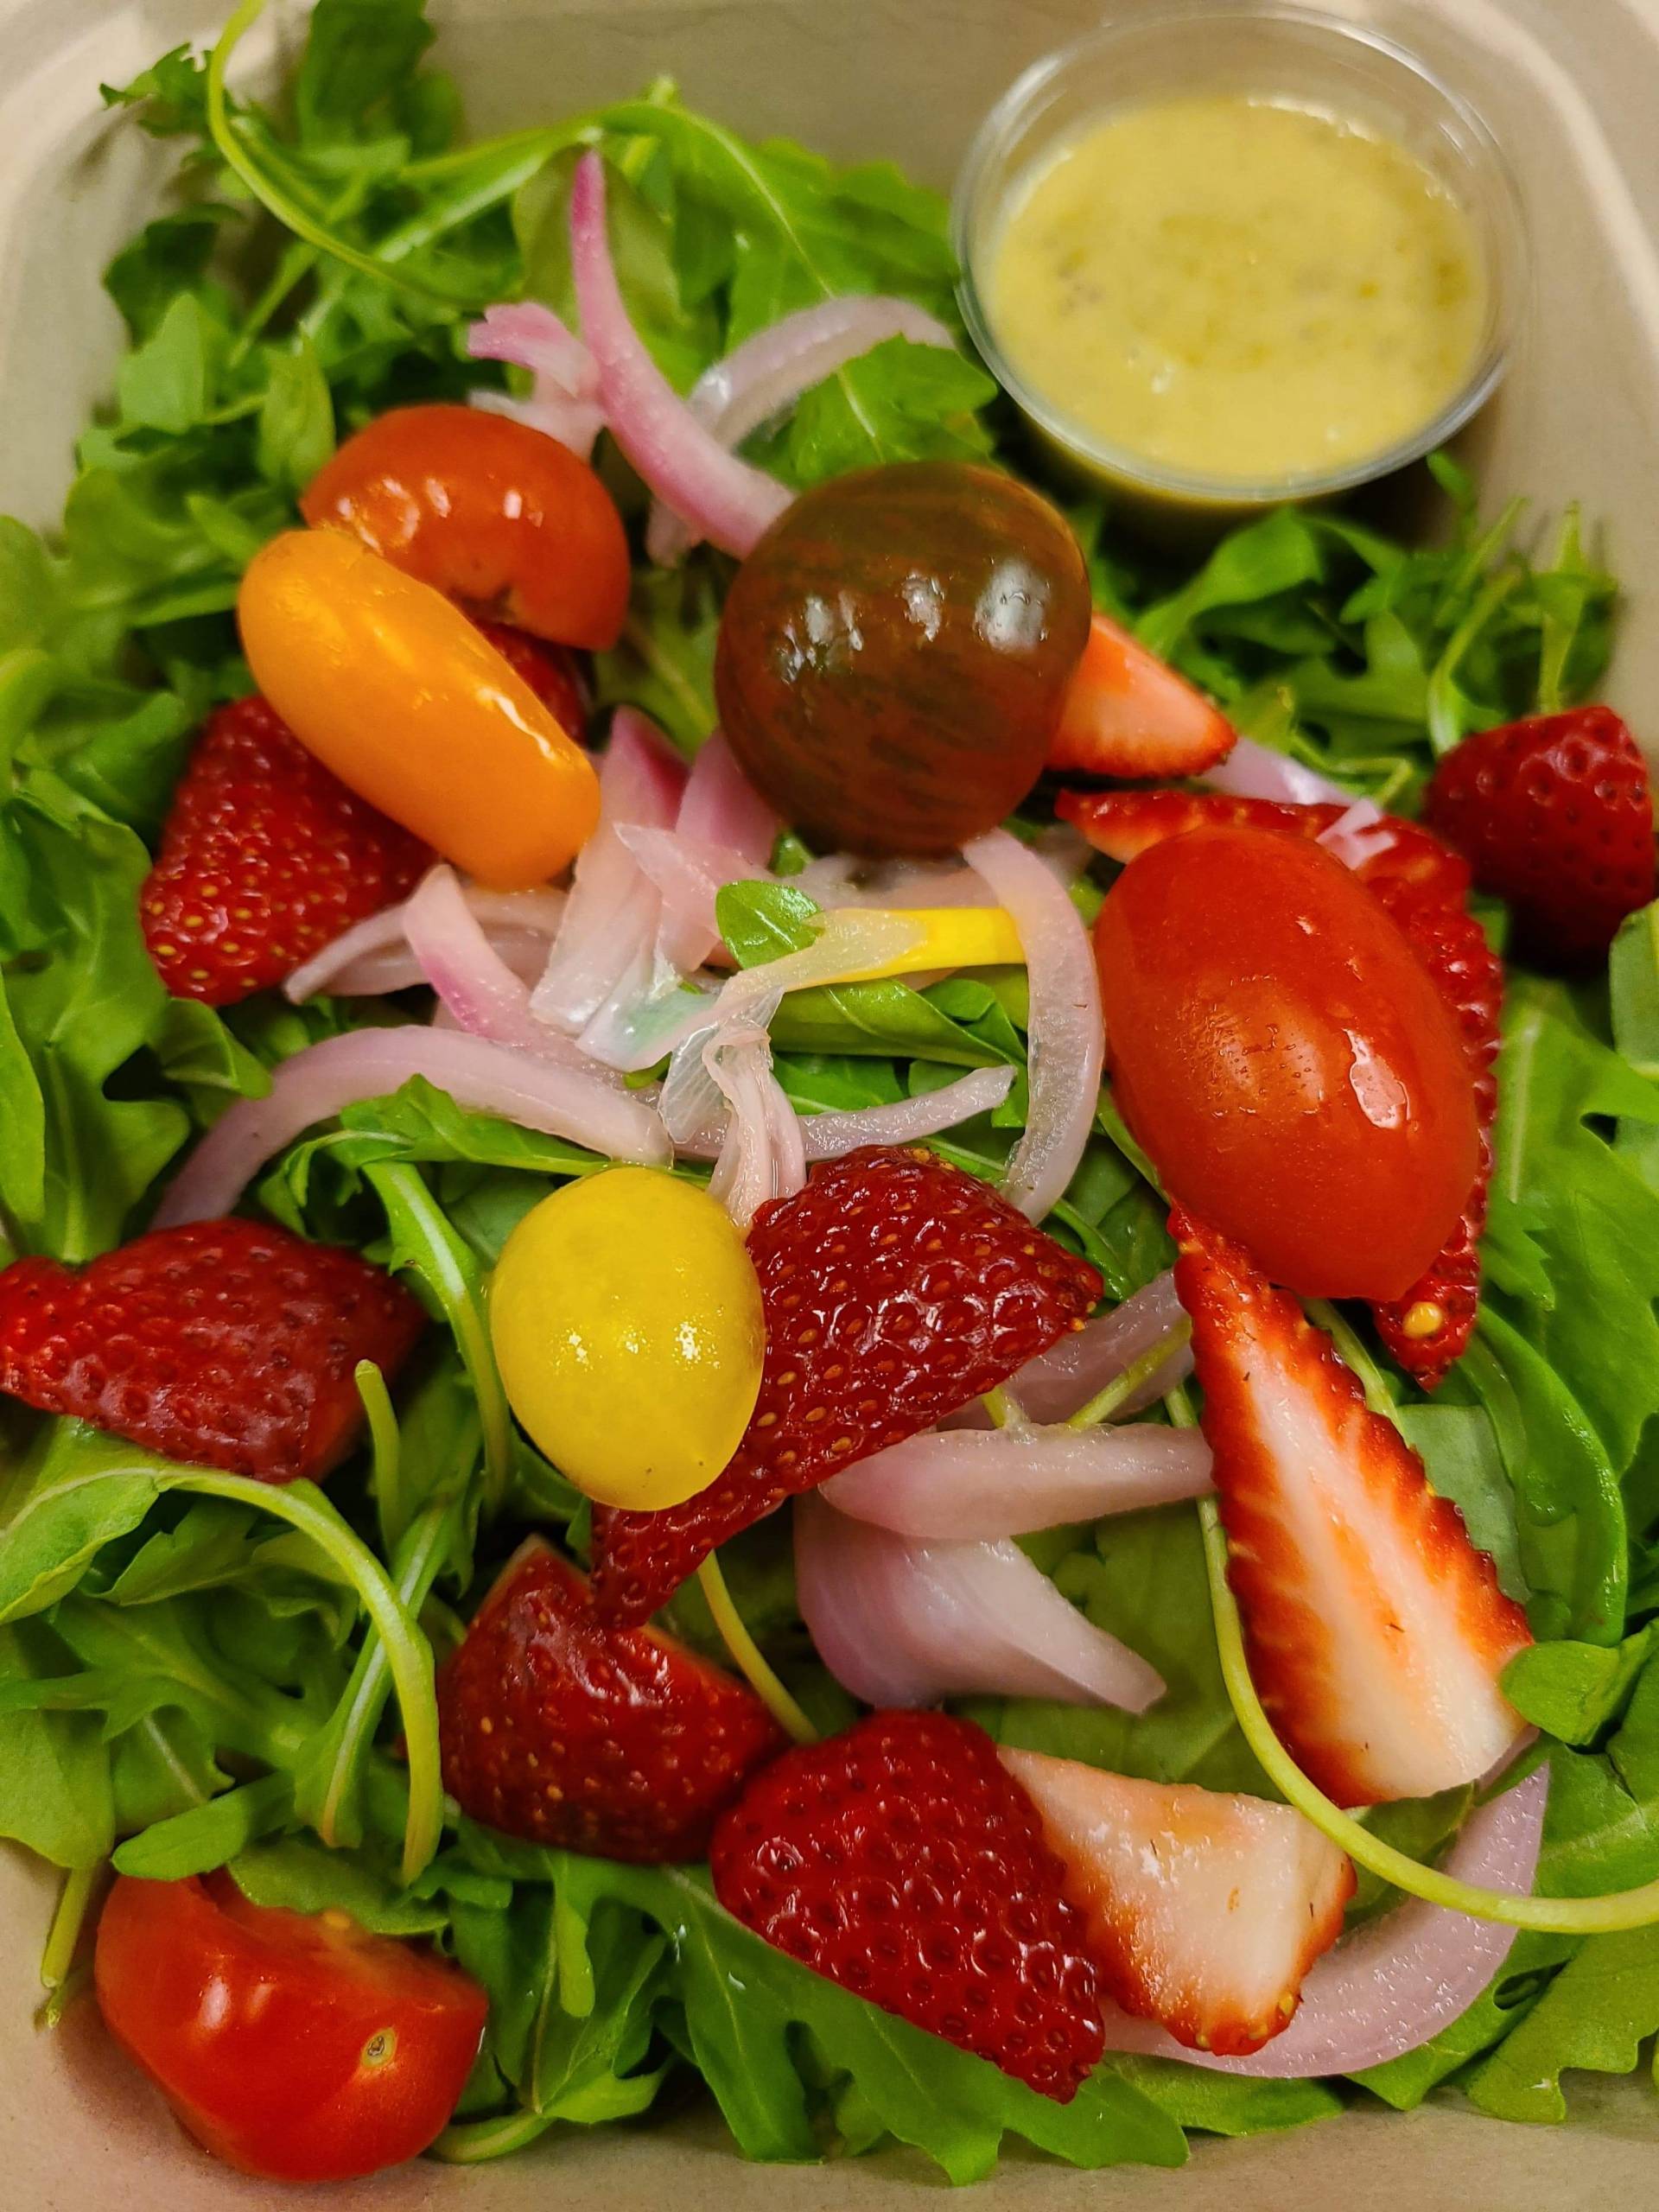 Local Strawberry & Arugula Salad- Add on